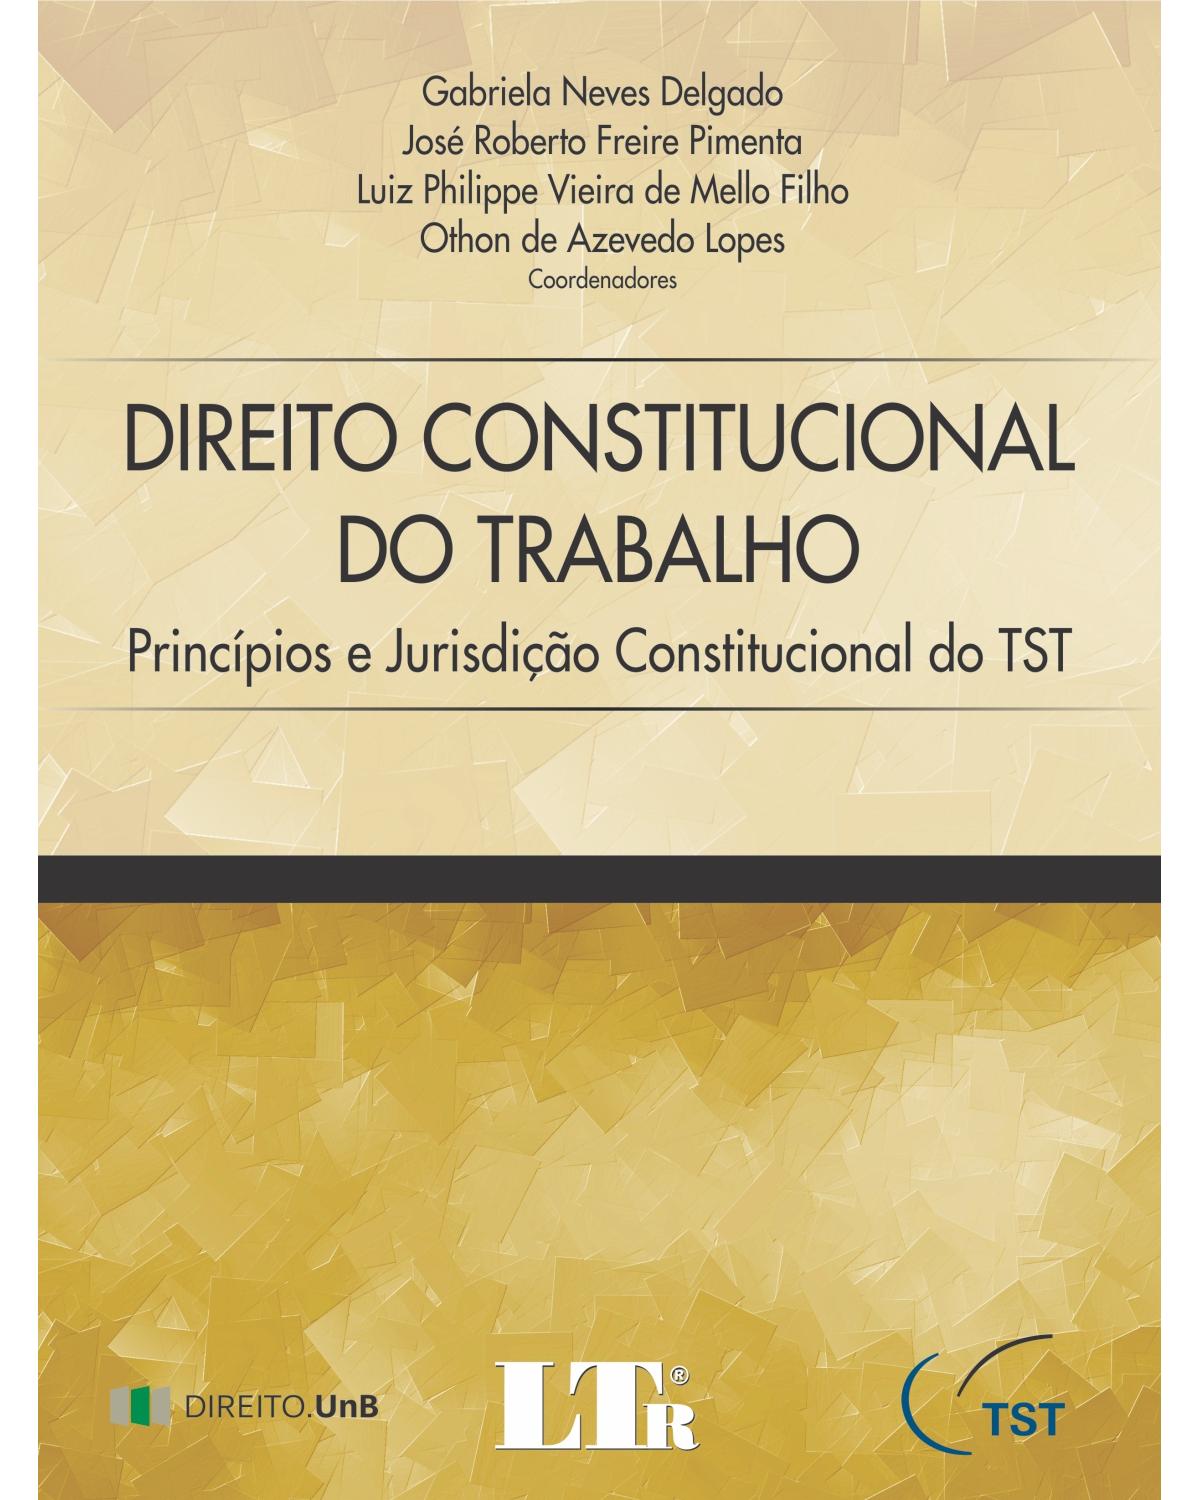 Direito constitucional do trabalho: Princípios e jurisdição constitucional do TST - 1ª Edição